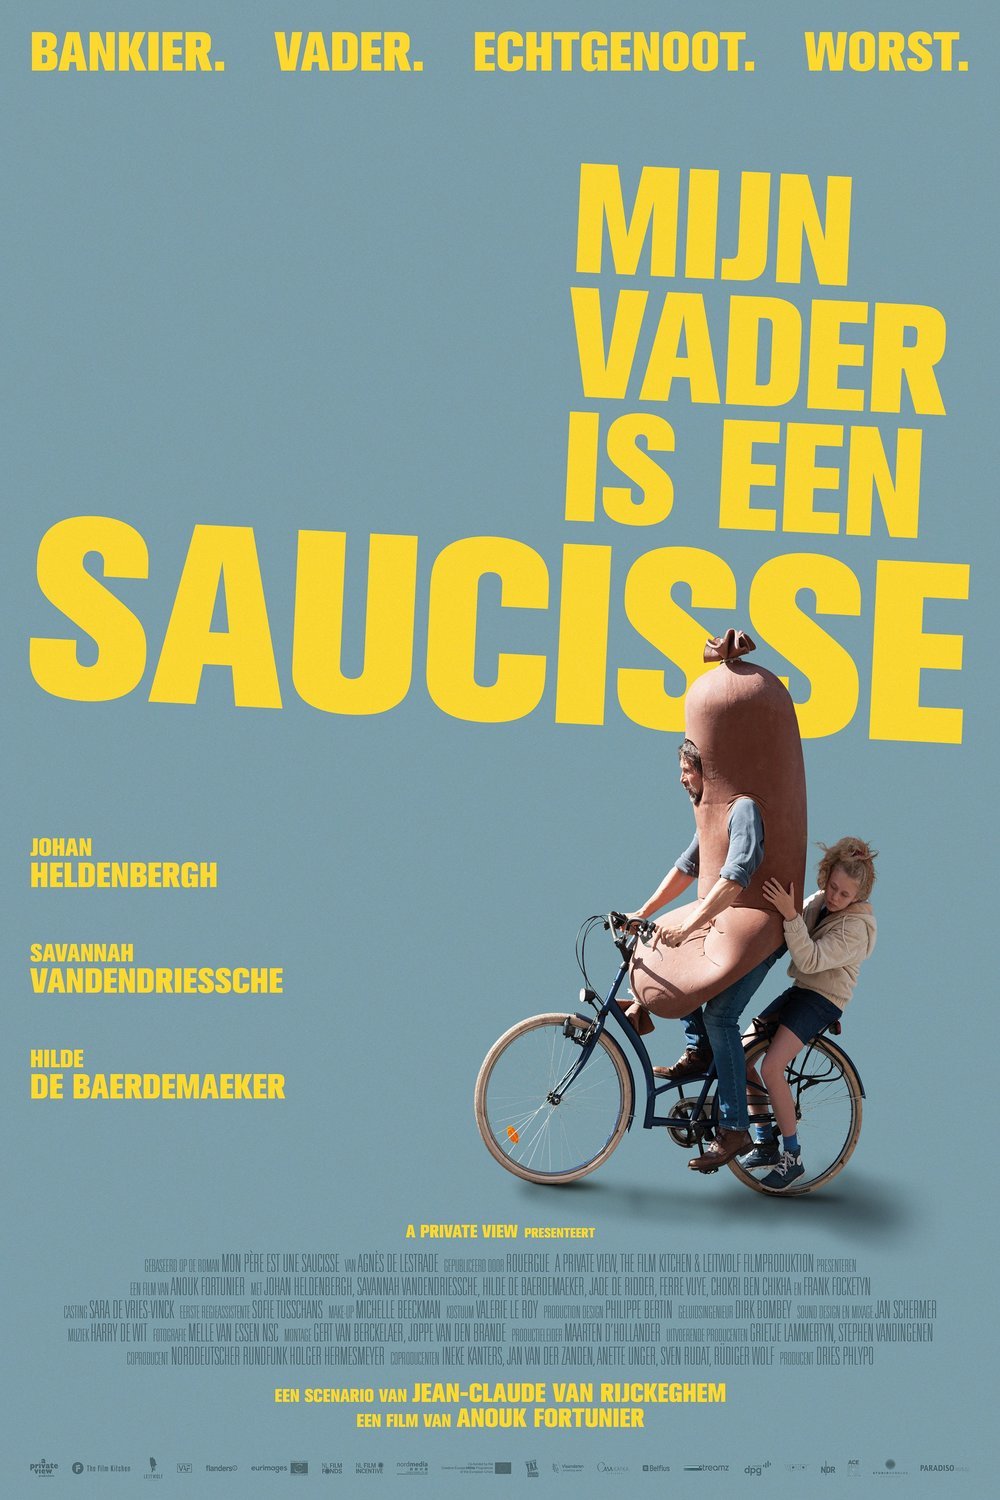 Flemish poster of the movie Mijn vader is een saucisse